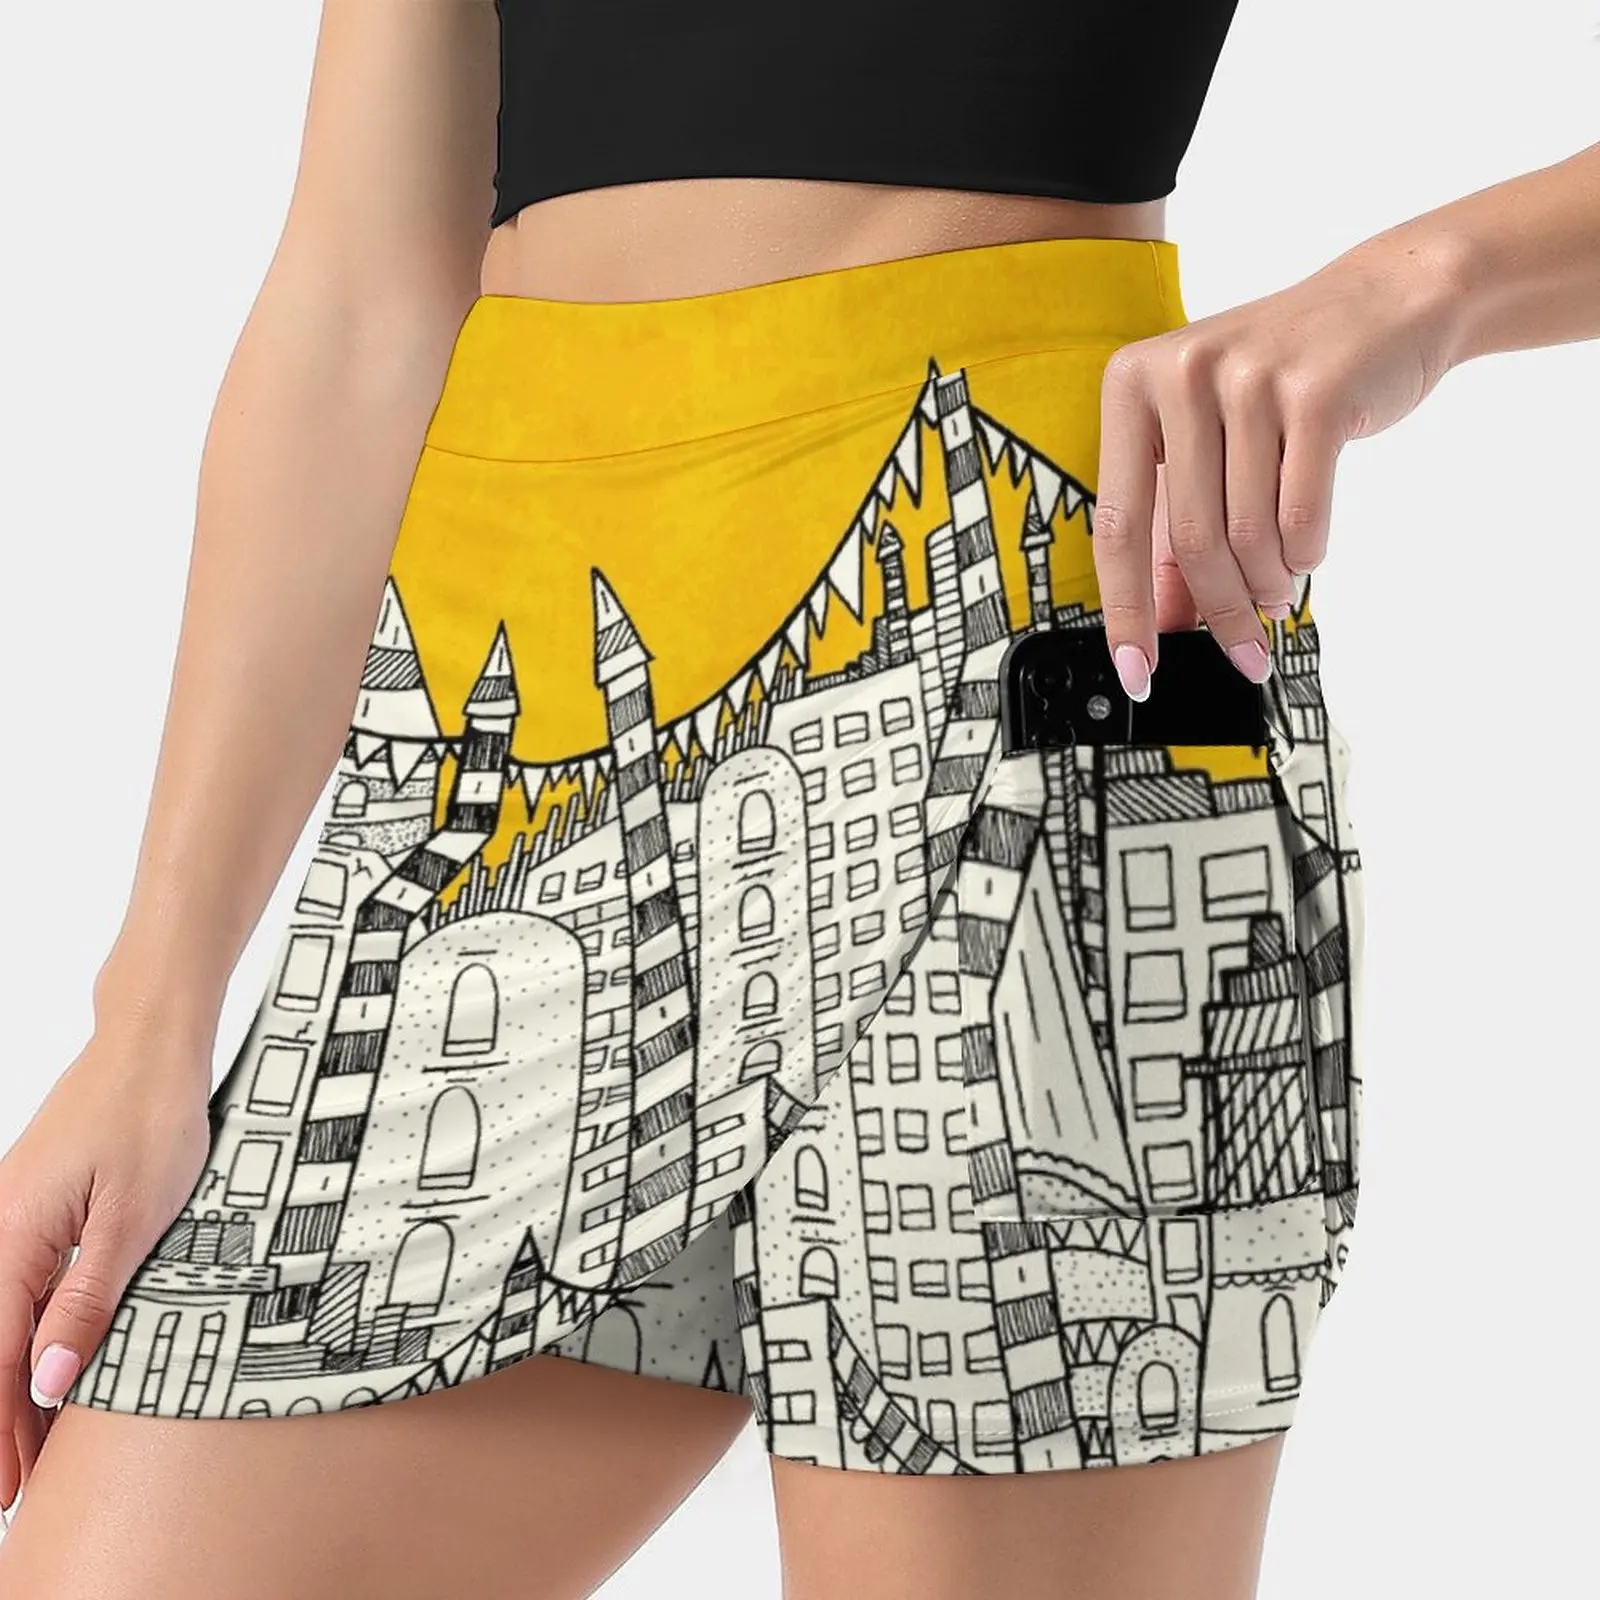 

Женская Спортивная юбка с большим солнцем, маленькая городская юбка для тенниса, гольфа, танцев, фитнеса, бега, йоги, городские здания, башни, маяк